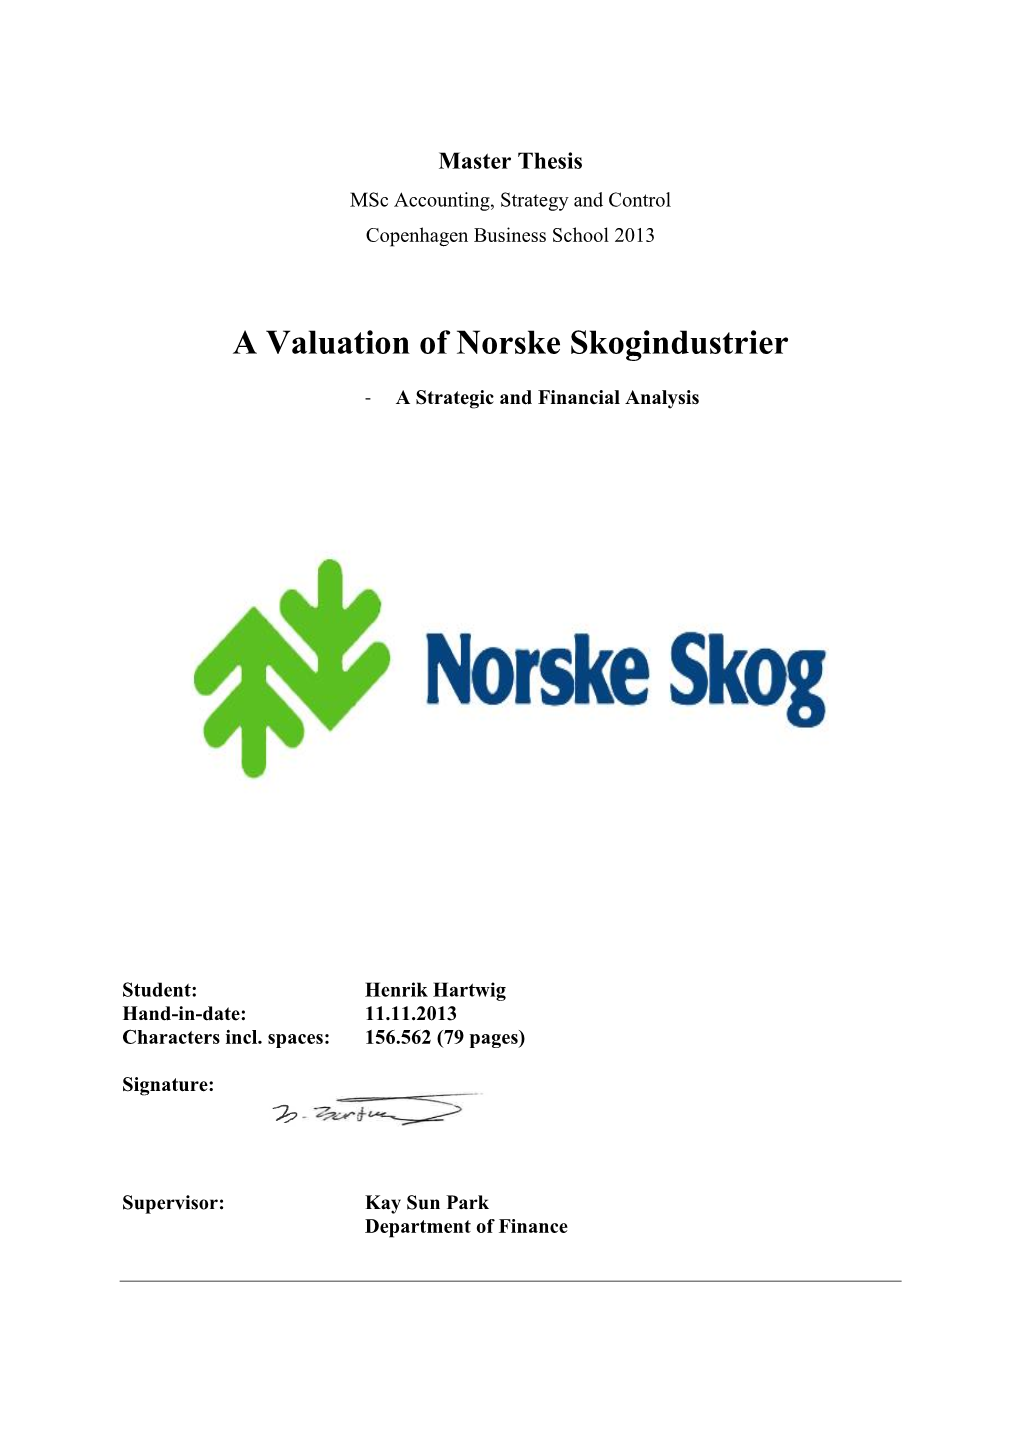 A Valuation of Norske Skogindustrier